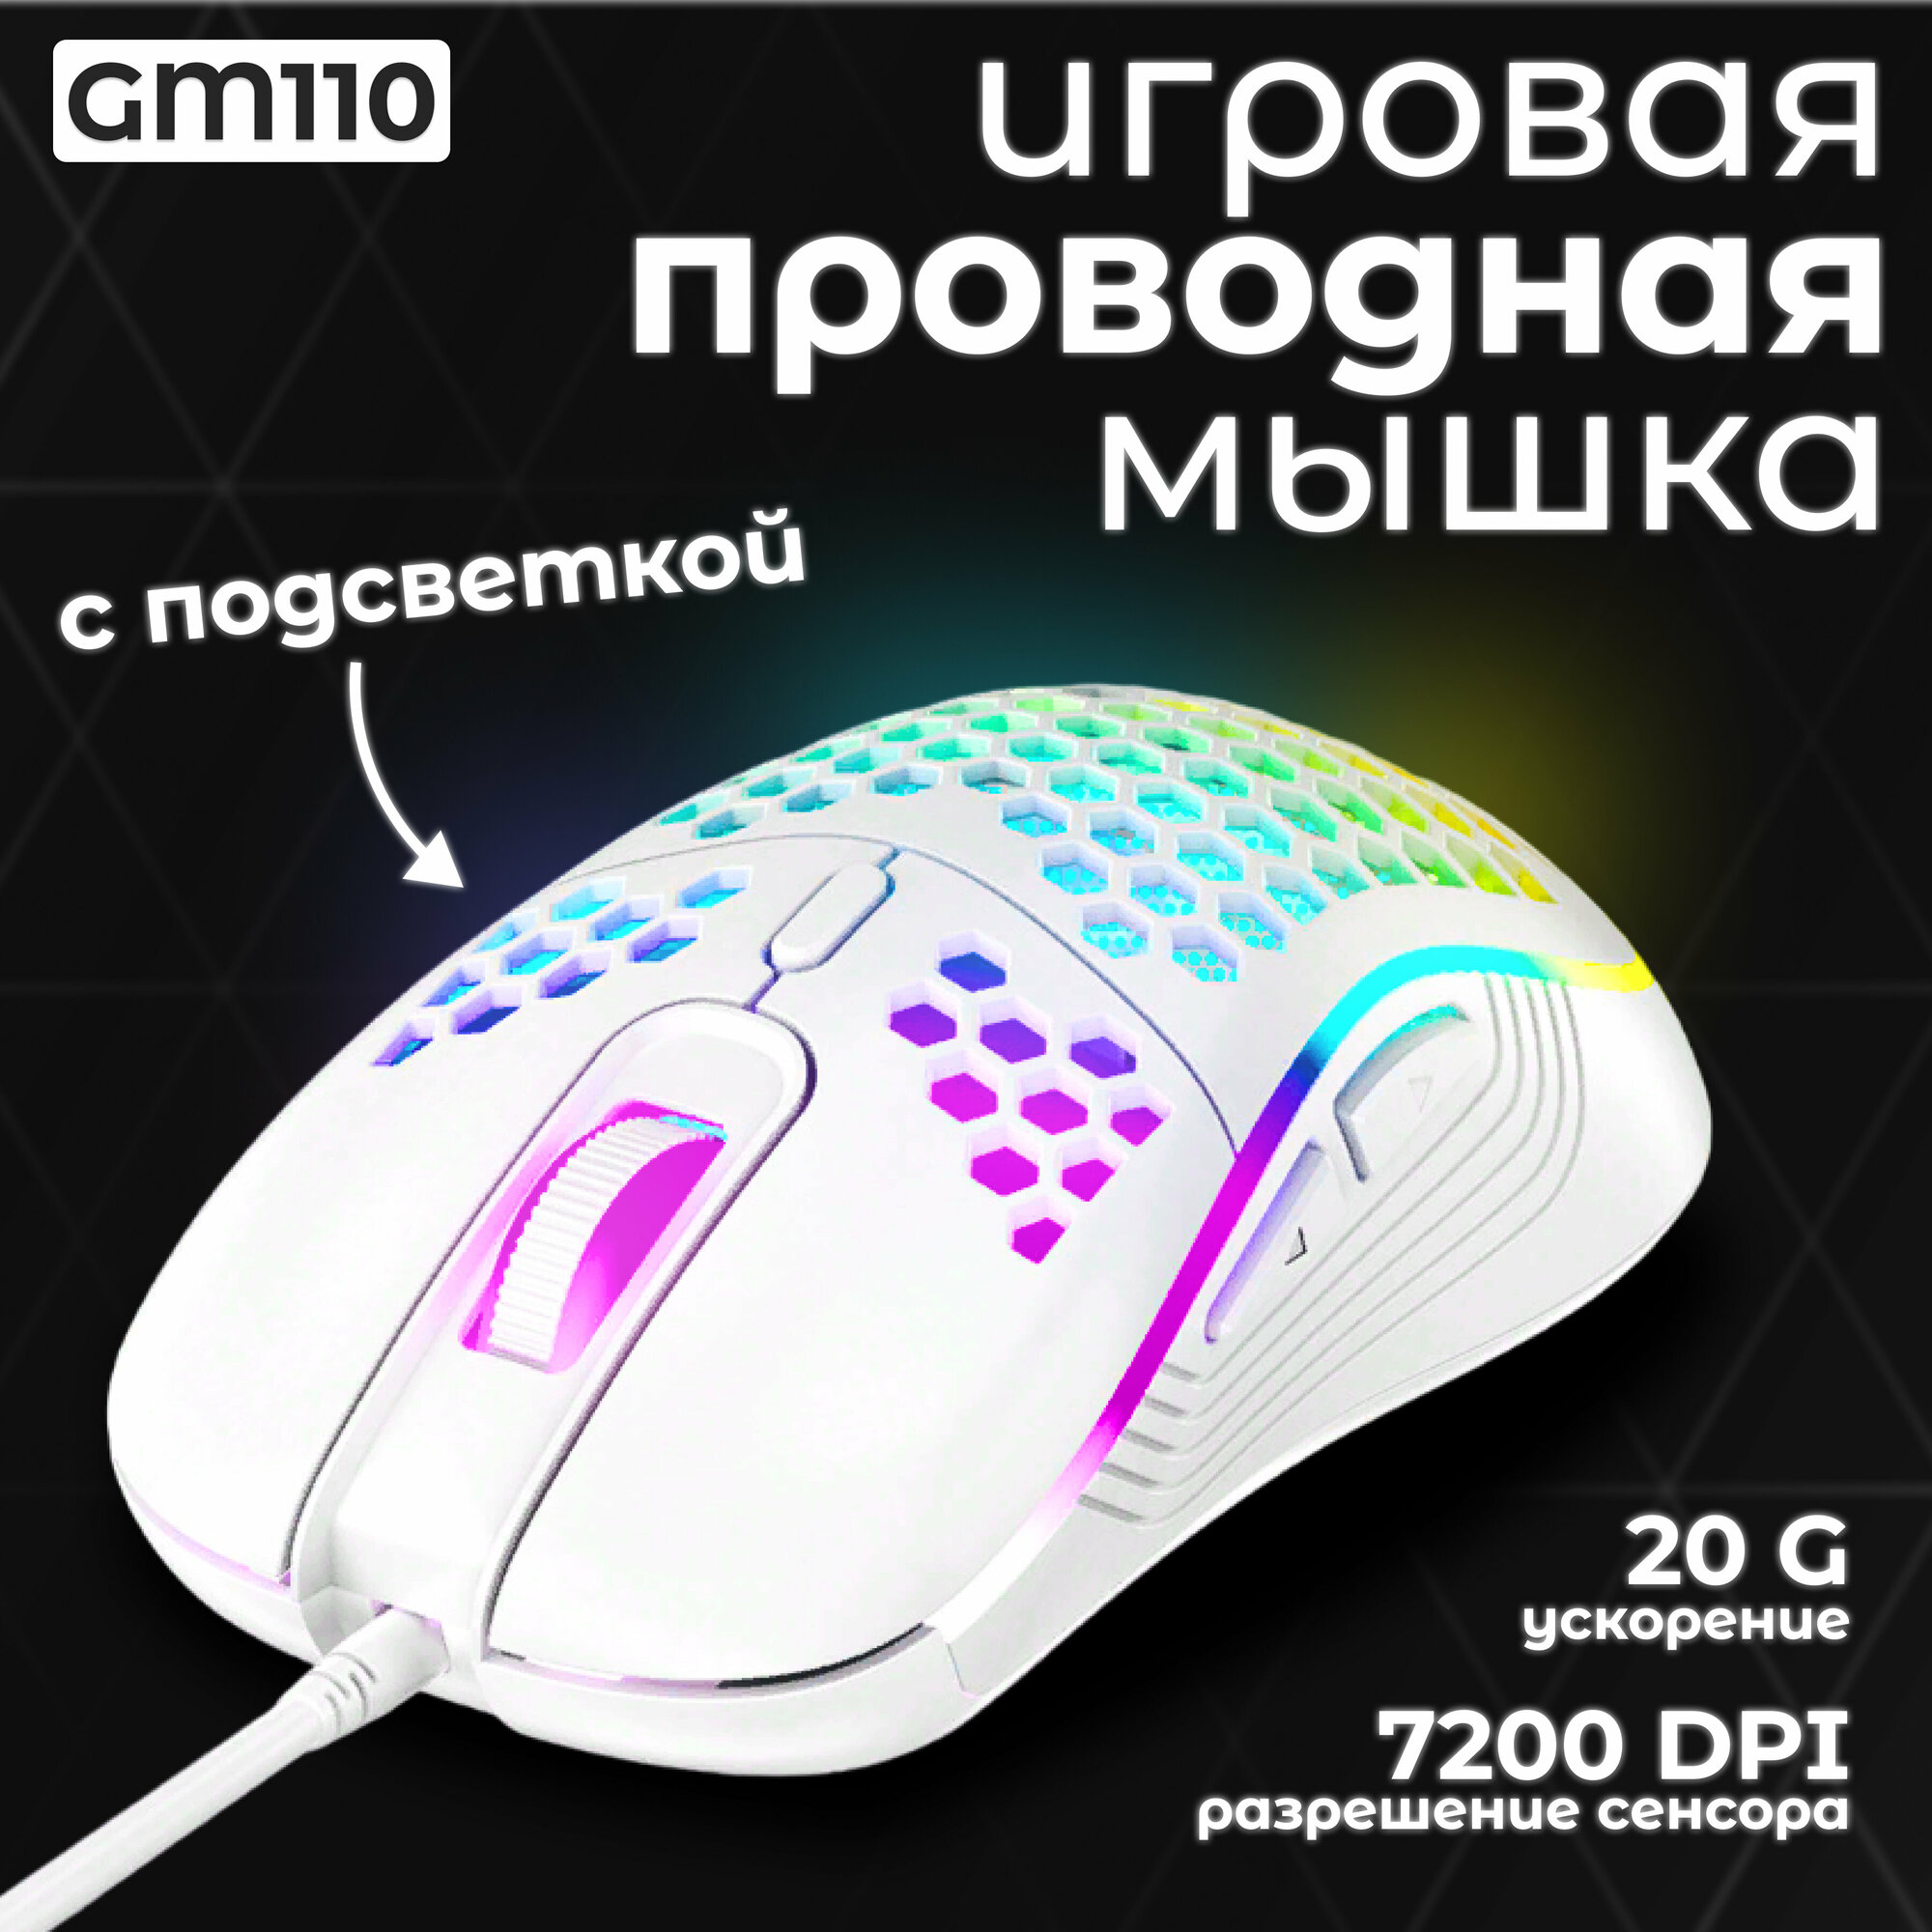 Мышь компьютерная проводная игровая с подсветкой мышка GM110